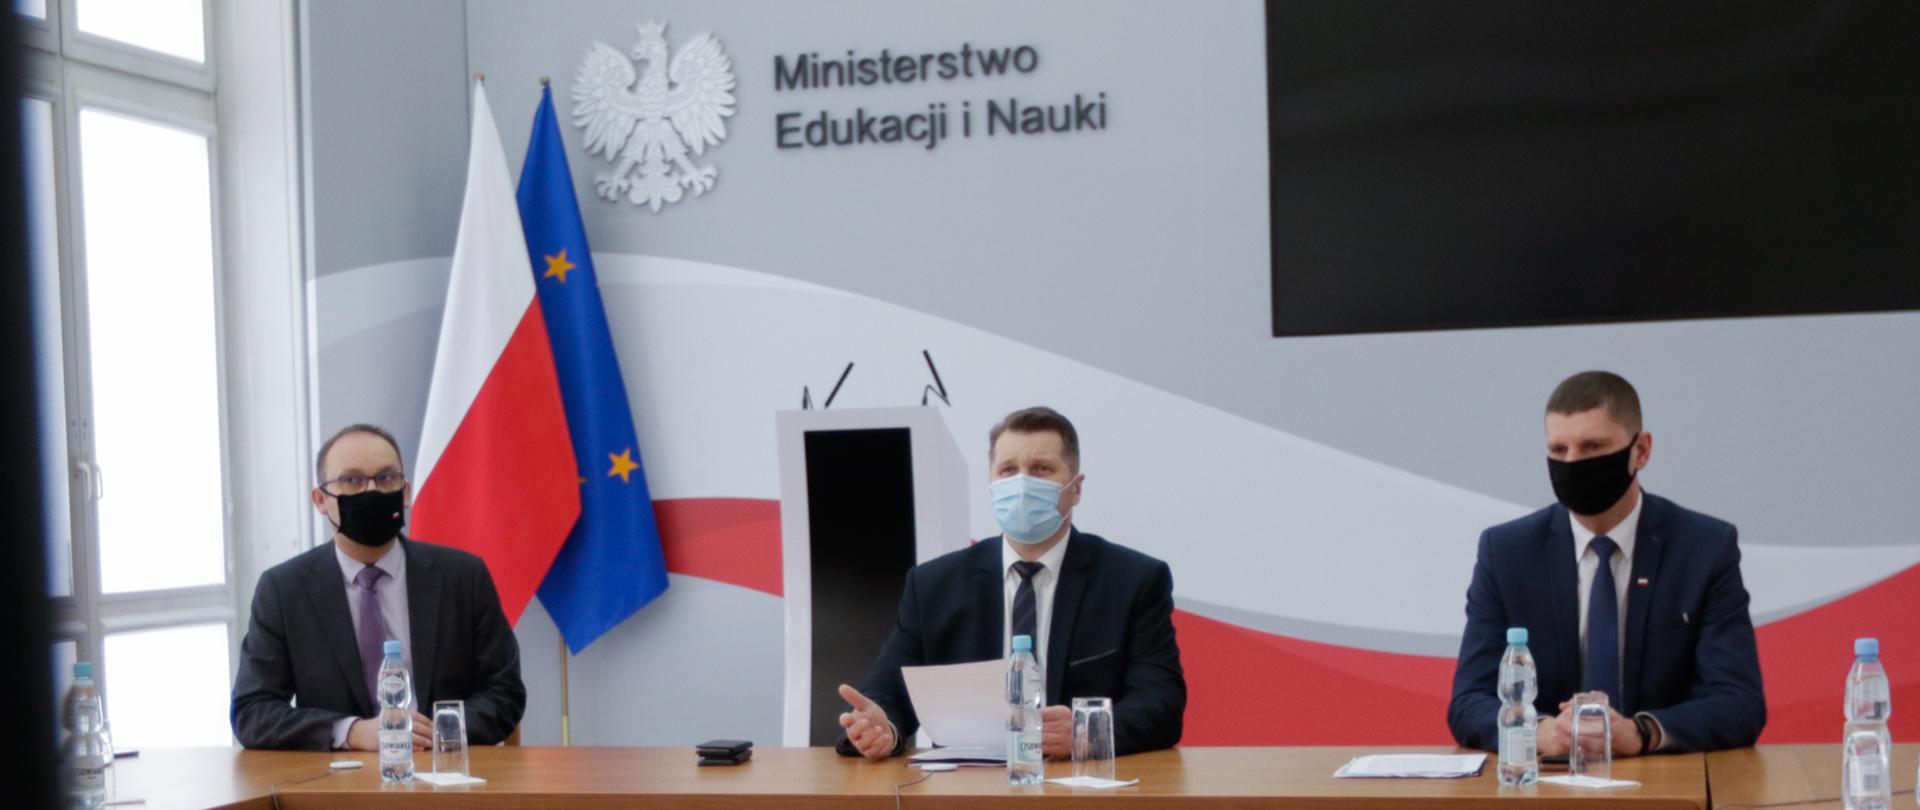 Zdjęcie ze spotkania Ministra Edukacji i Nauki z przedstawicielami Sekcji Wydawców Edukacyjnych Polskiej Izby Książki.